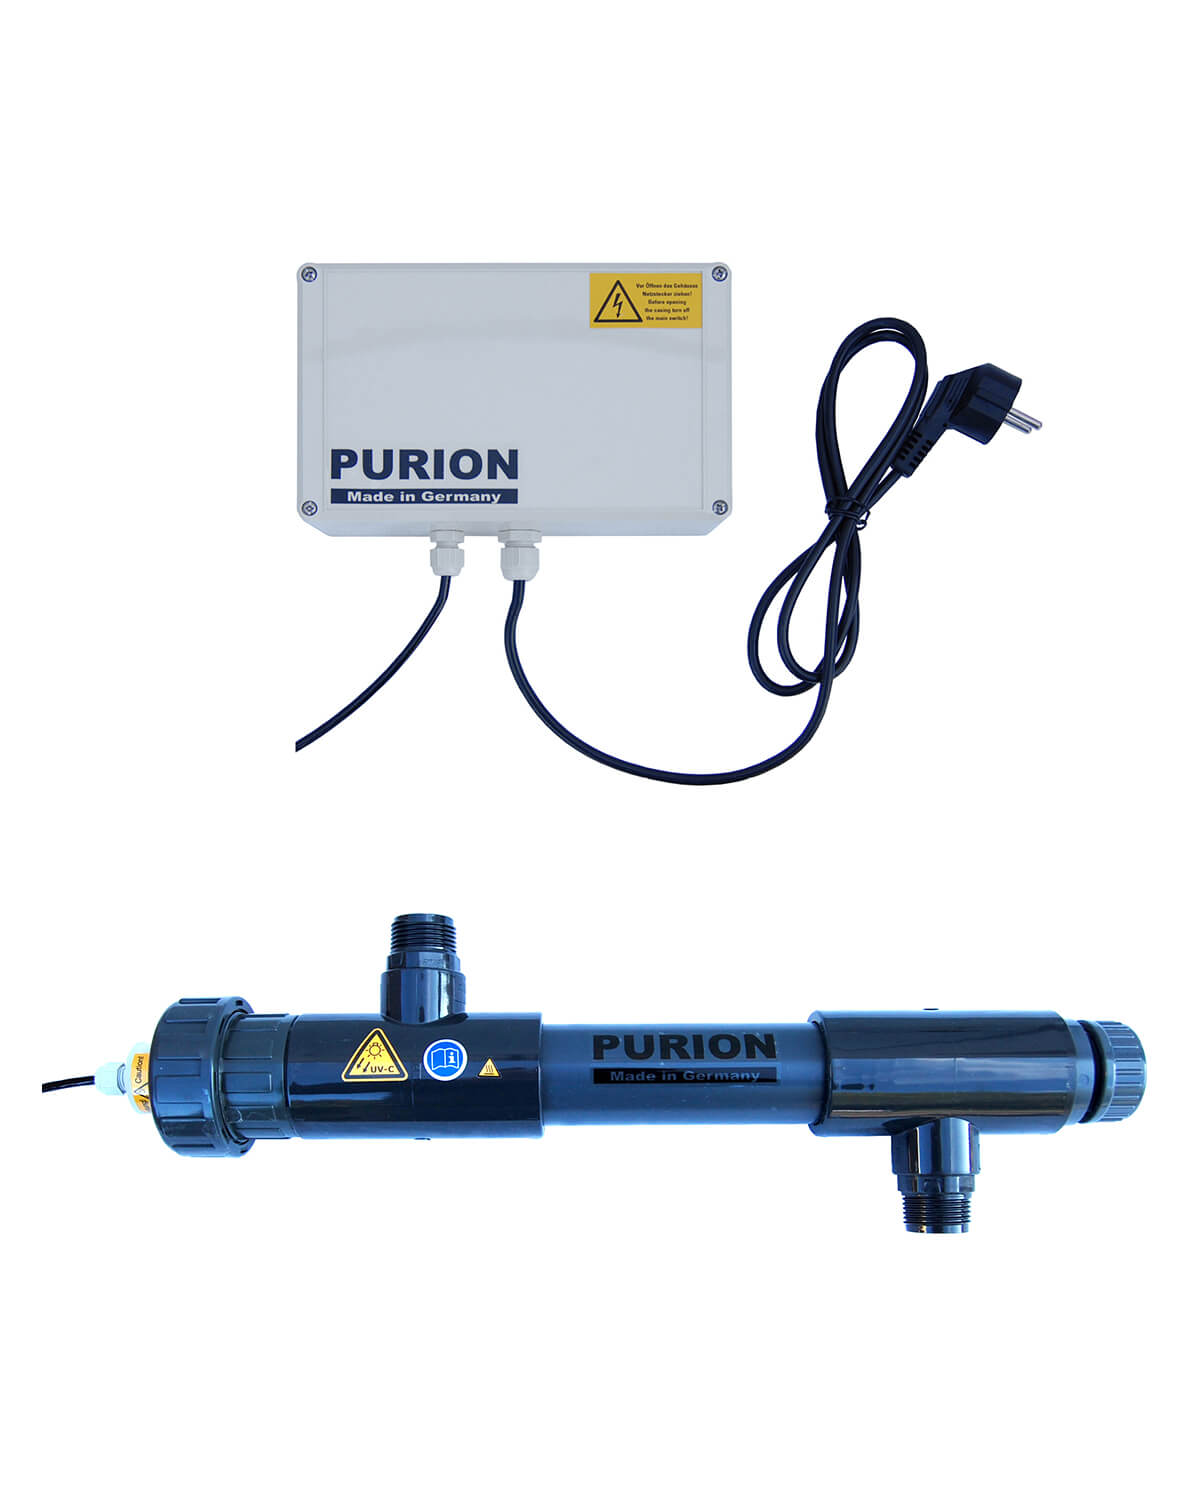 PURION 1000 PVC-U purion UV-C-Reinigung purion Salzwasserpools der Purion GmbH.